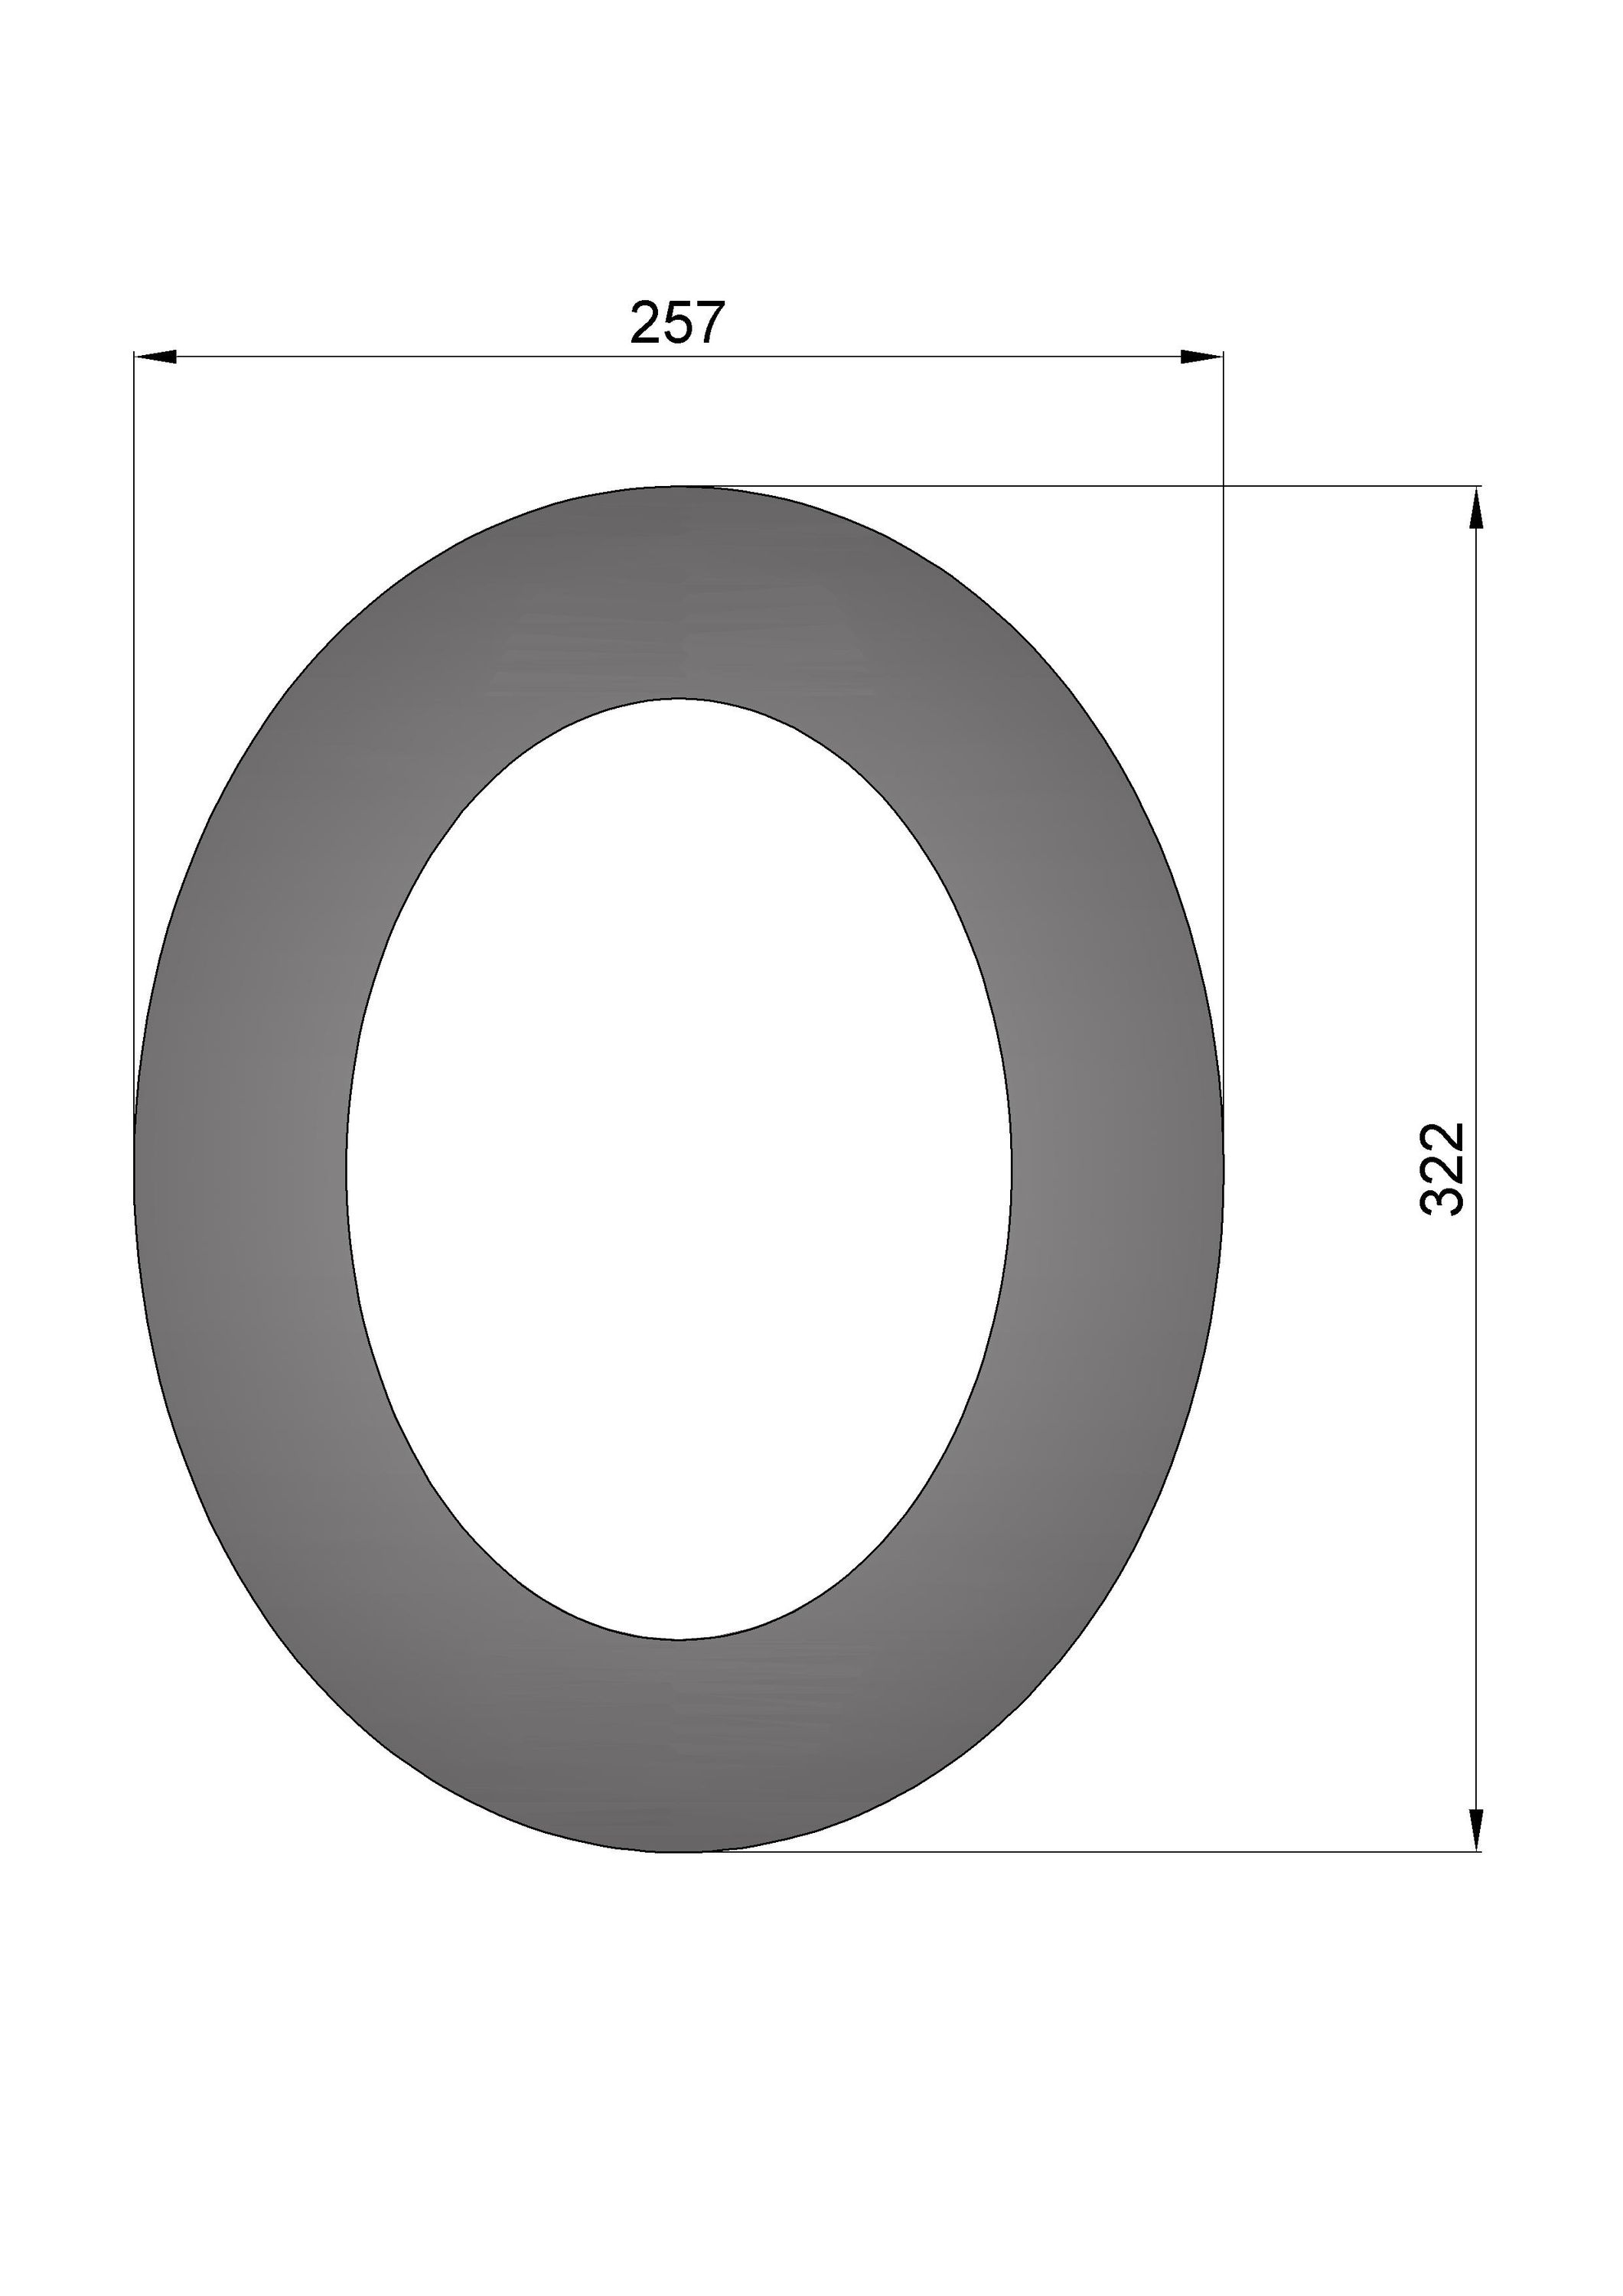 Wandrosette Rauchrohr Stahl 45° oval Ø 150 mm schwarz